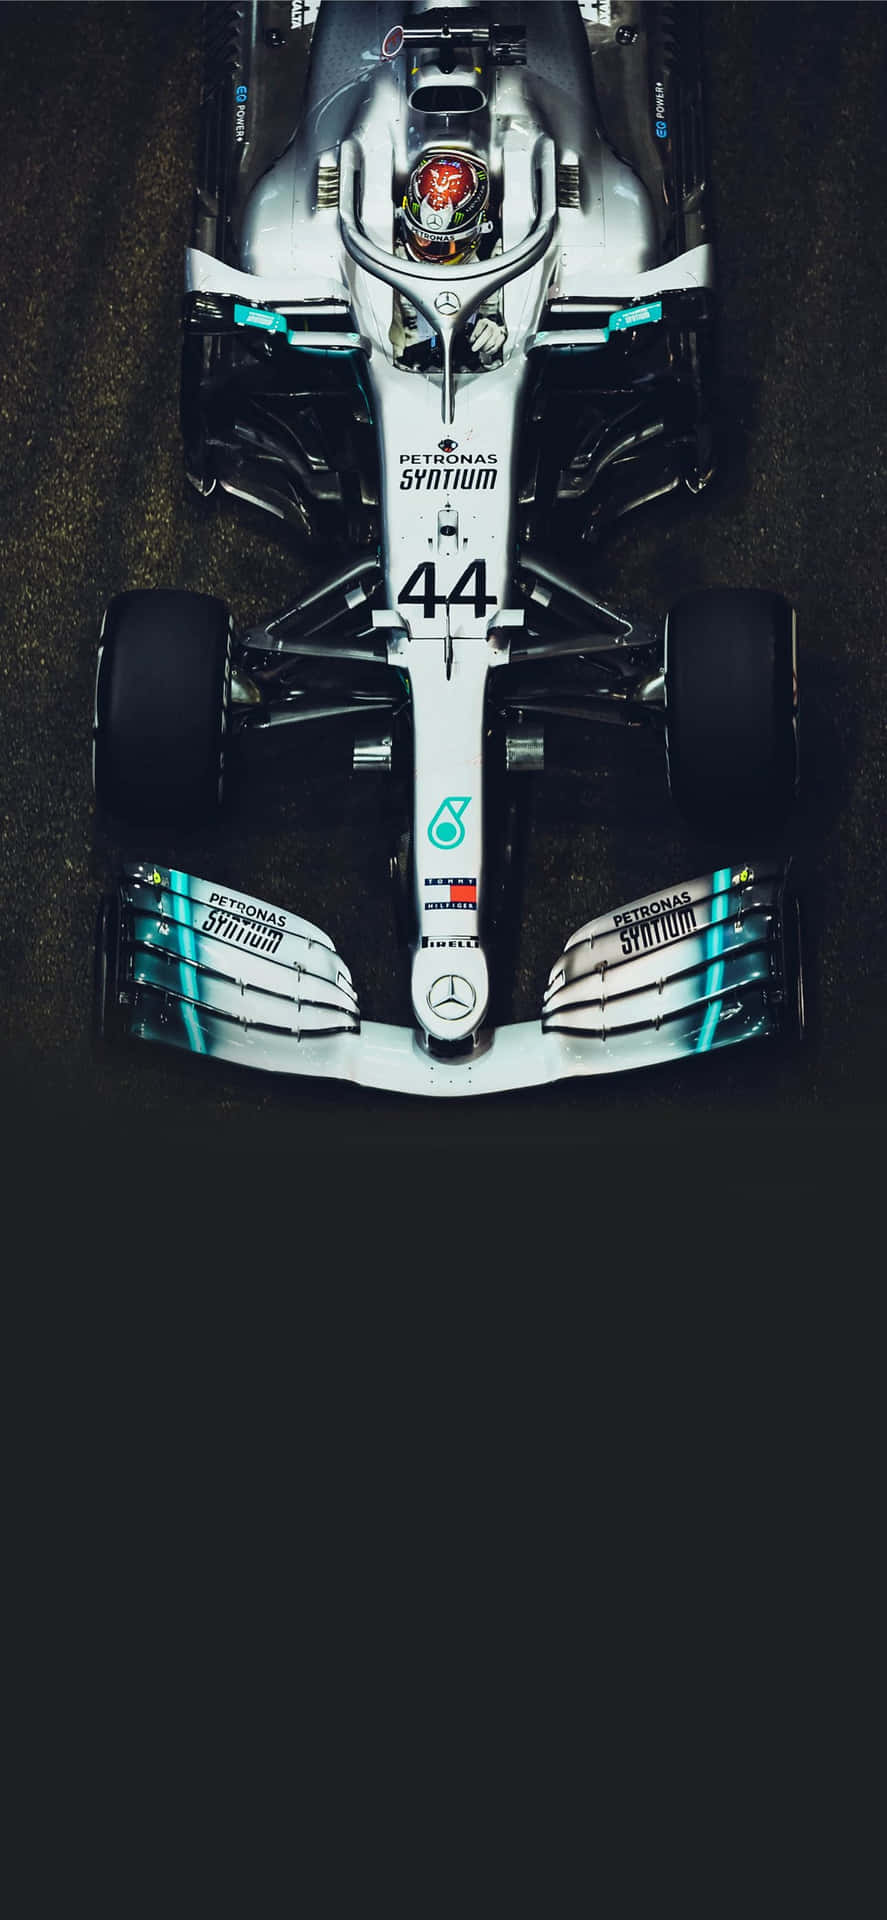 Nyd ekscellence af Formula 1 på din iPhone. Wallpaper